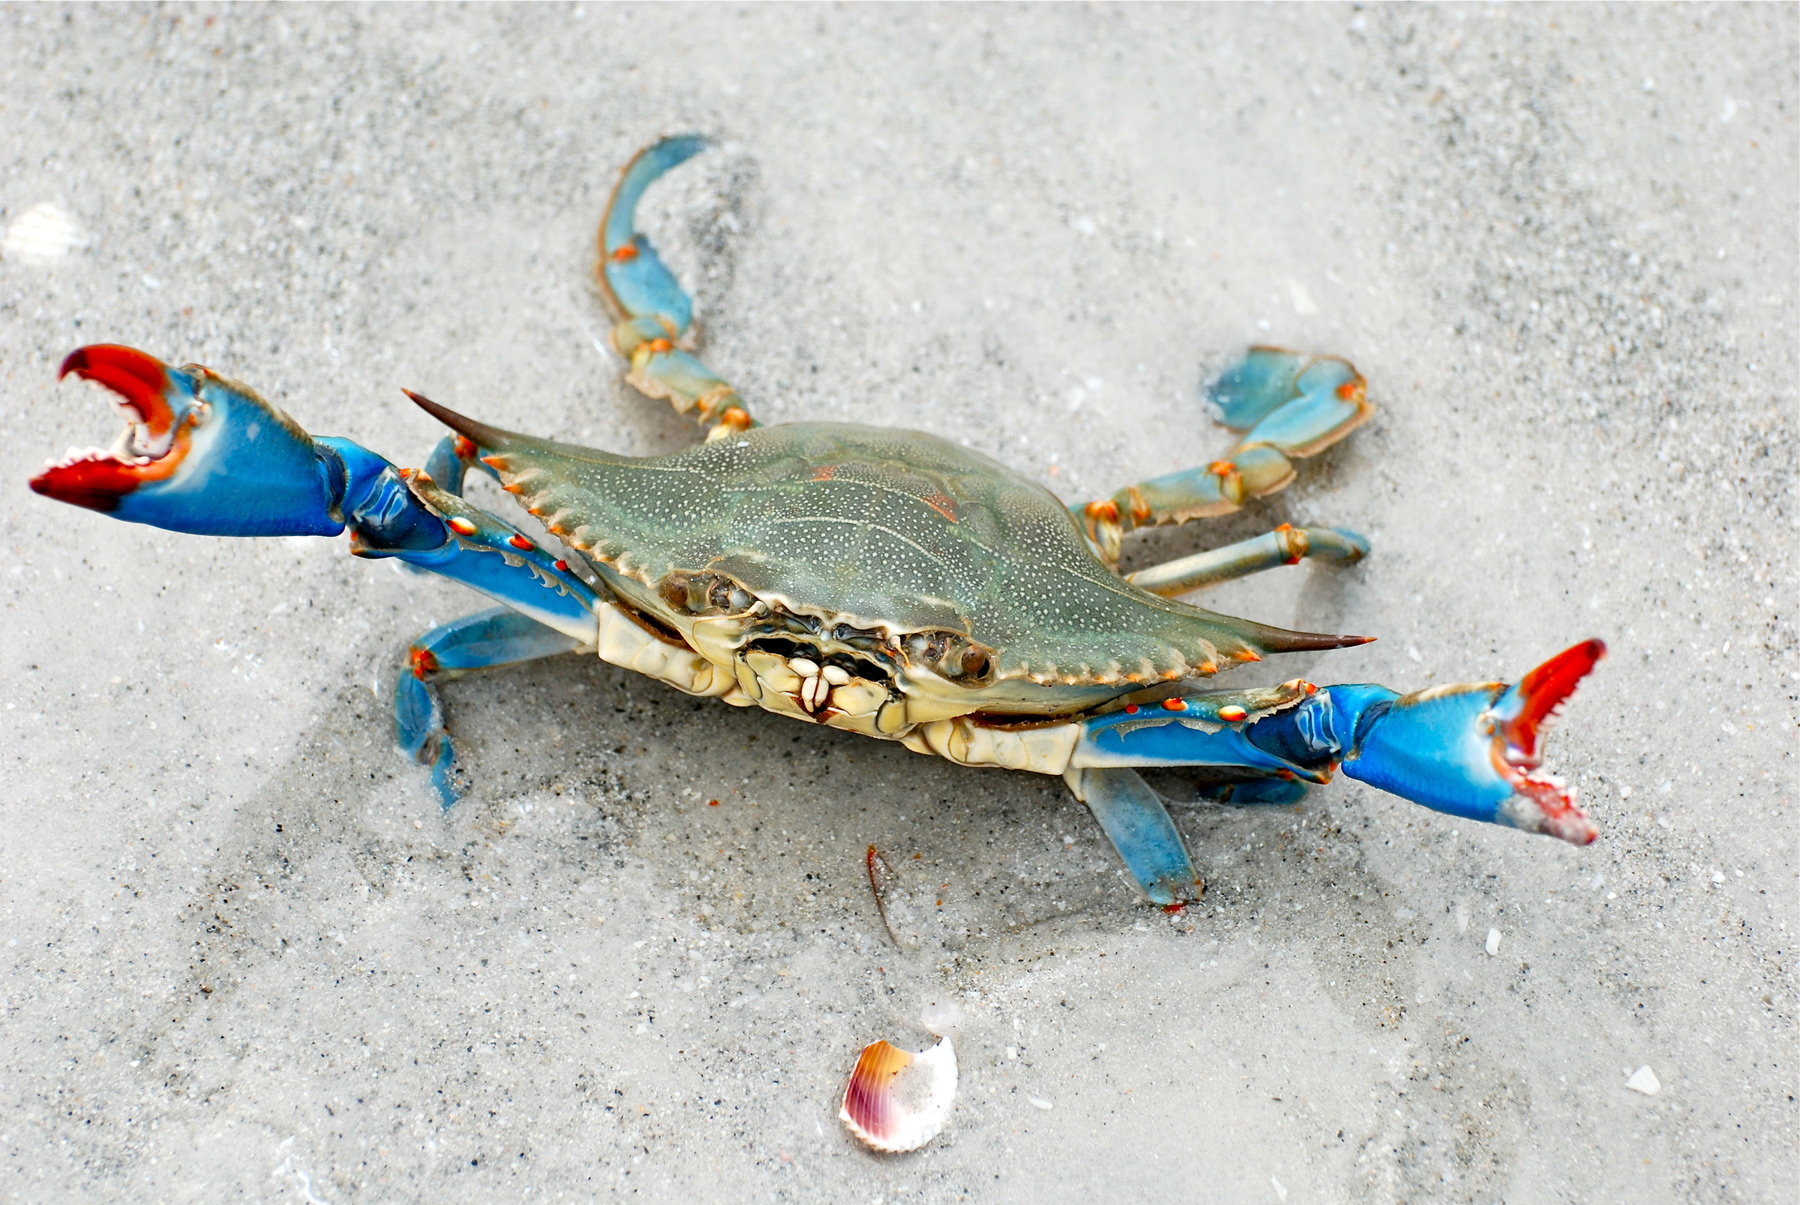 Enquête sur le Crabe bleu, Callinectes sapidus, à destination des pêcheurs récréatifs